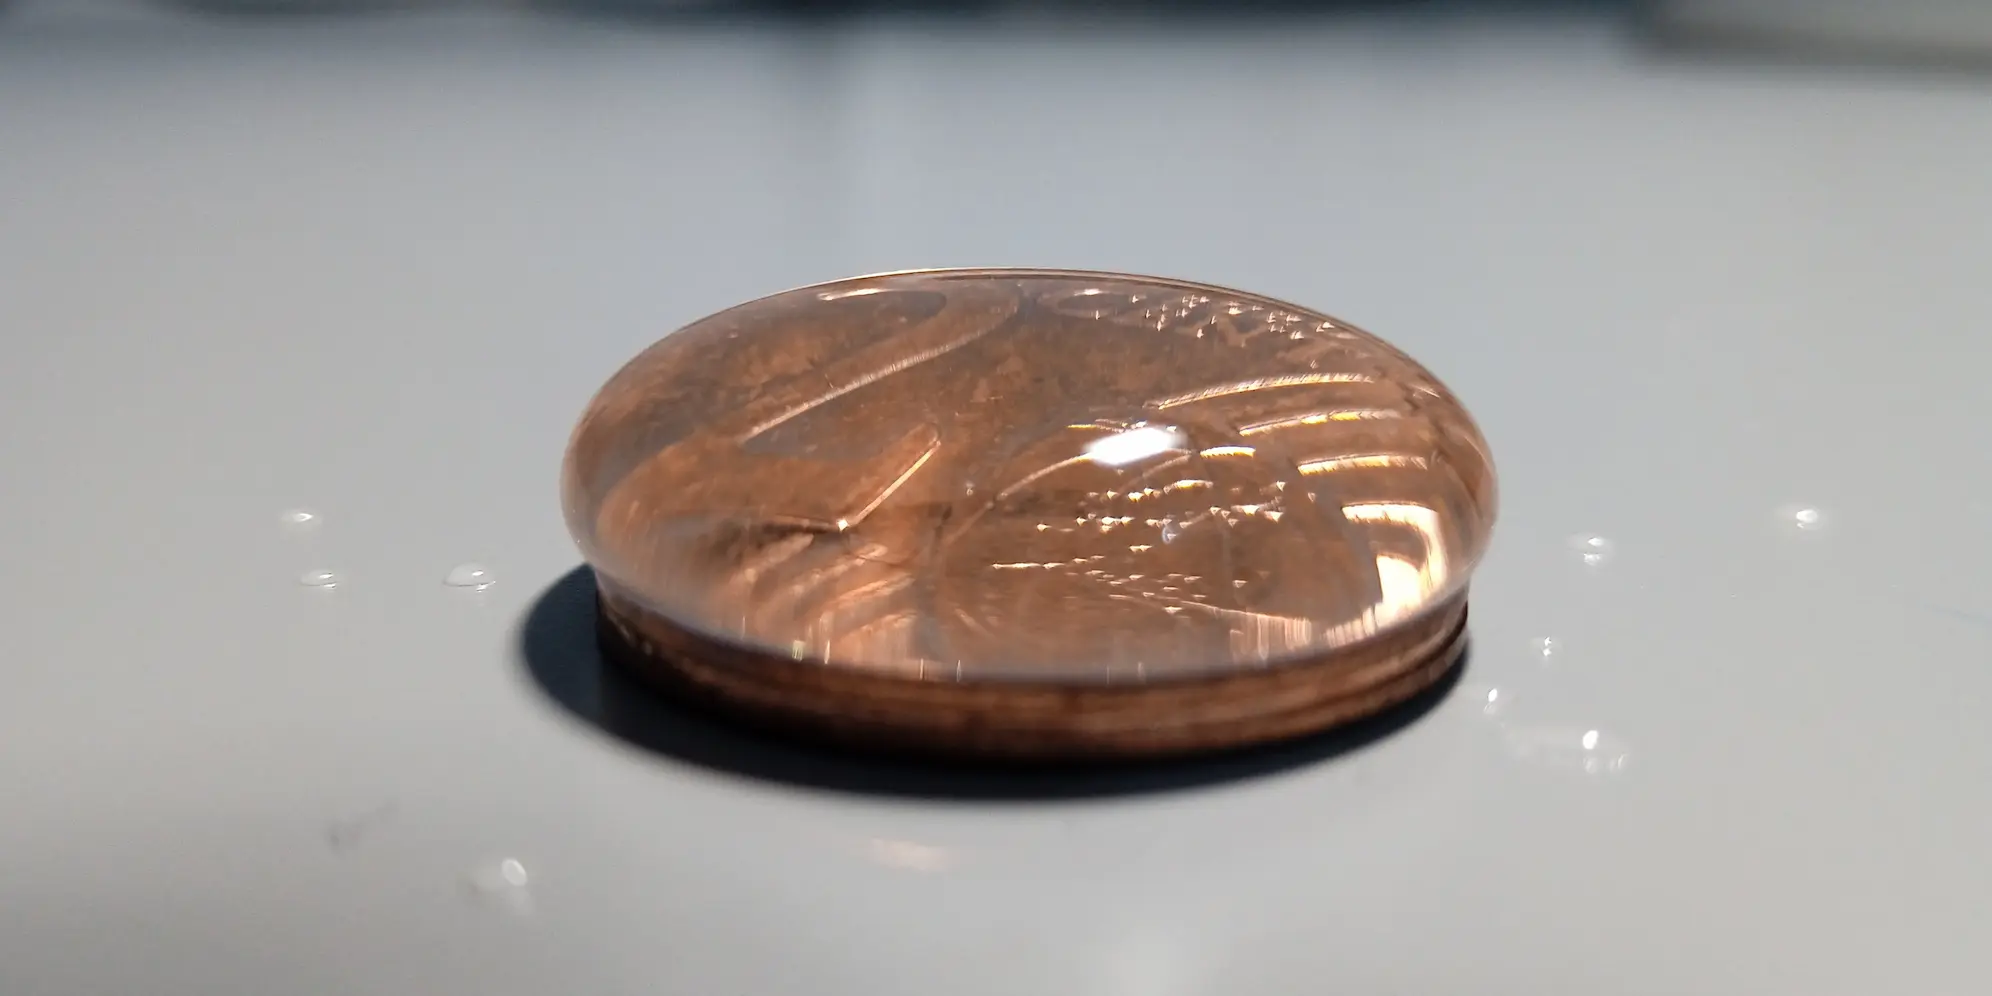 Cuentagotas echando gotas de agua sobre una moneda.